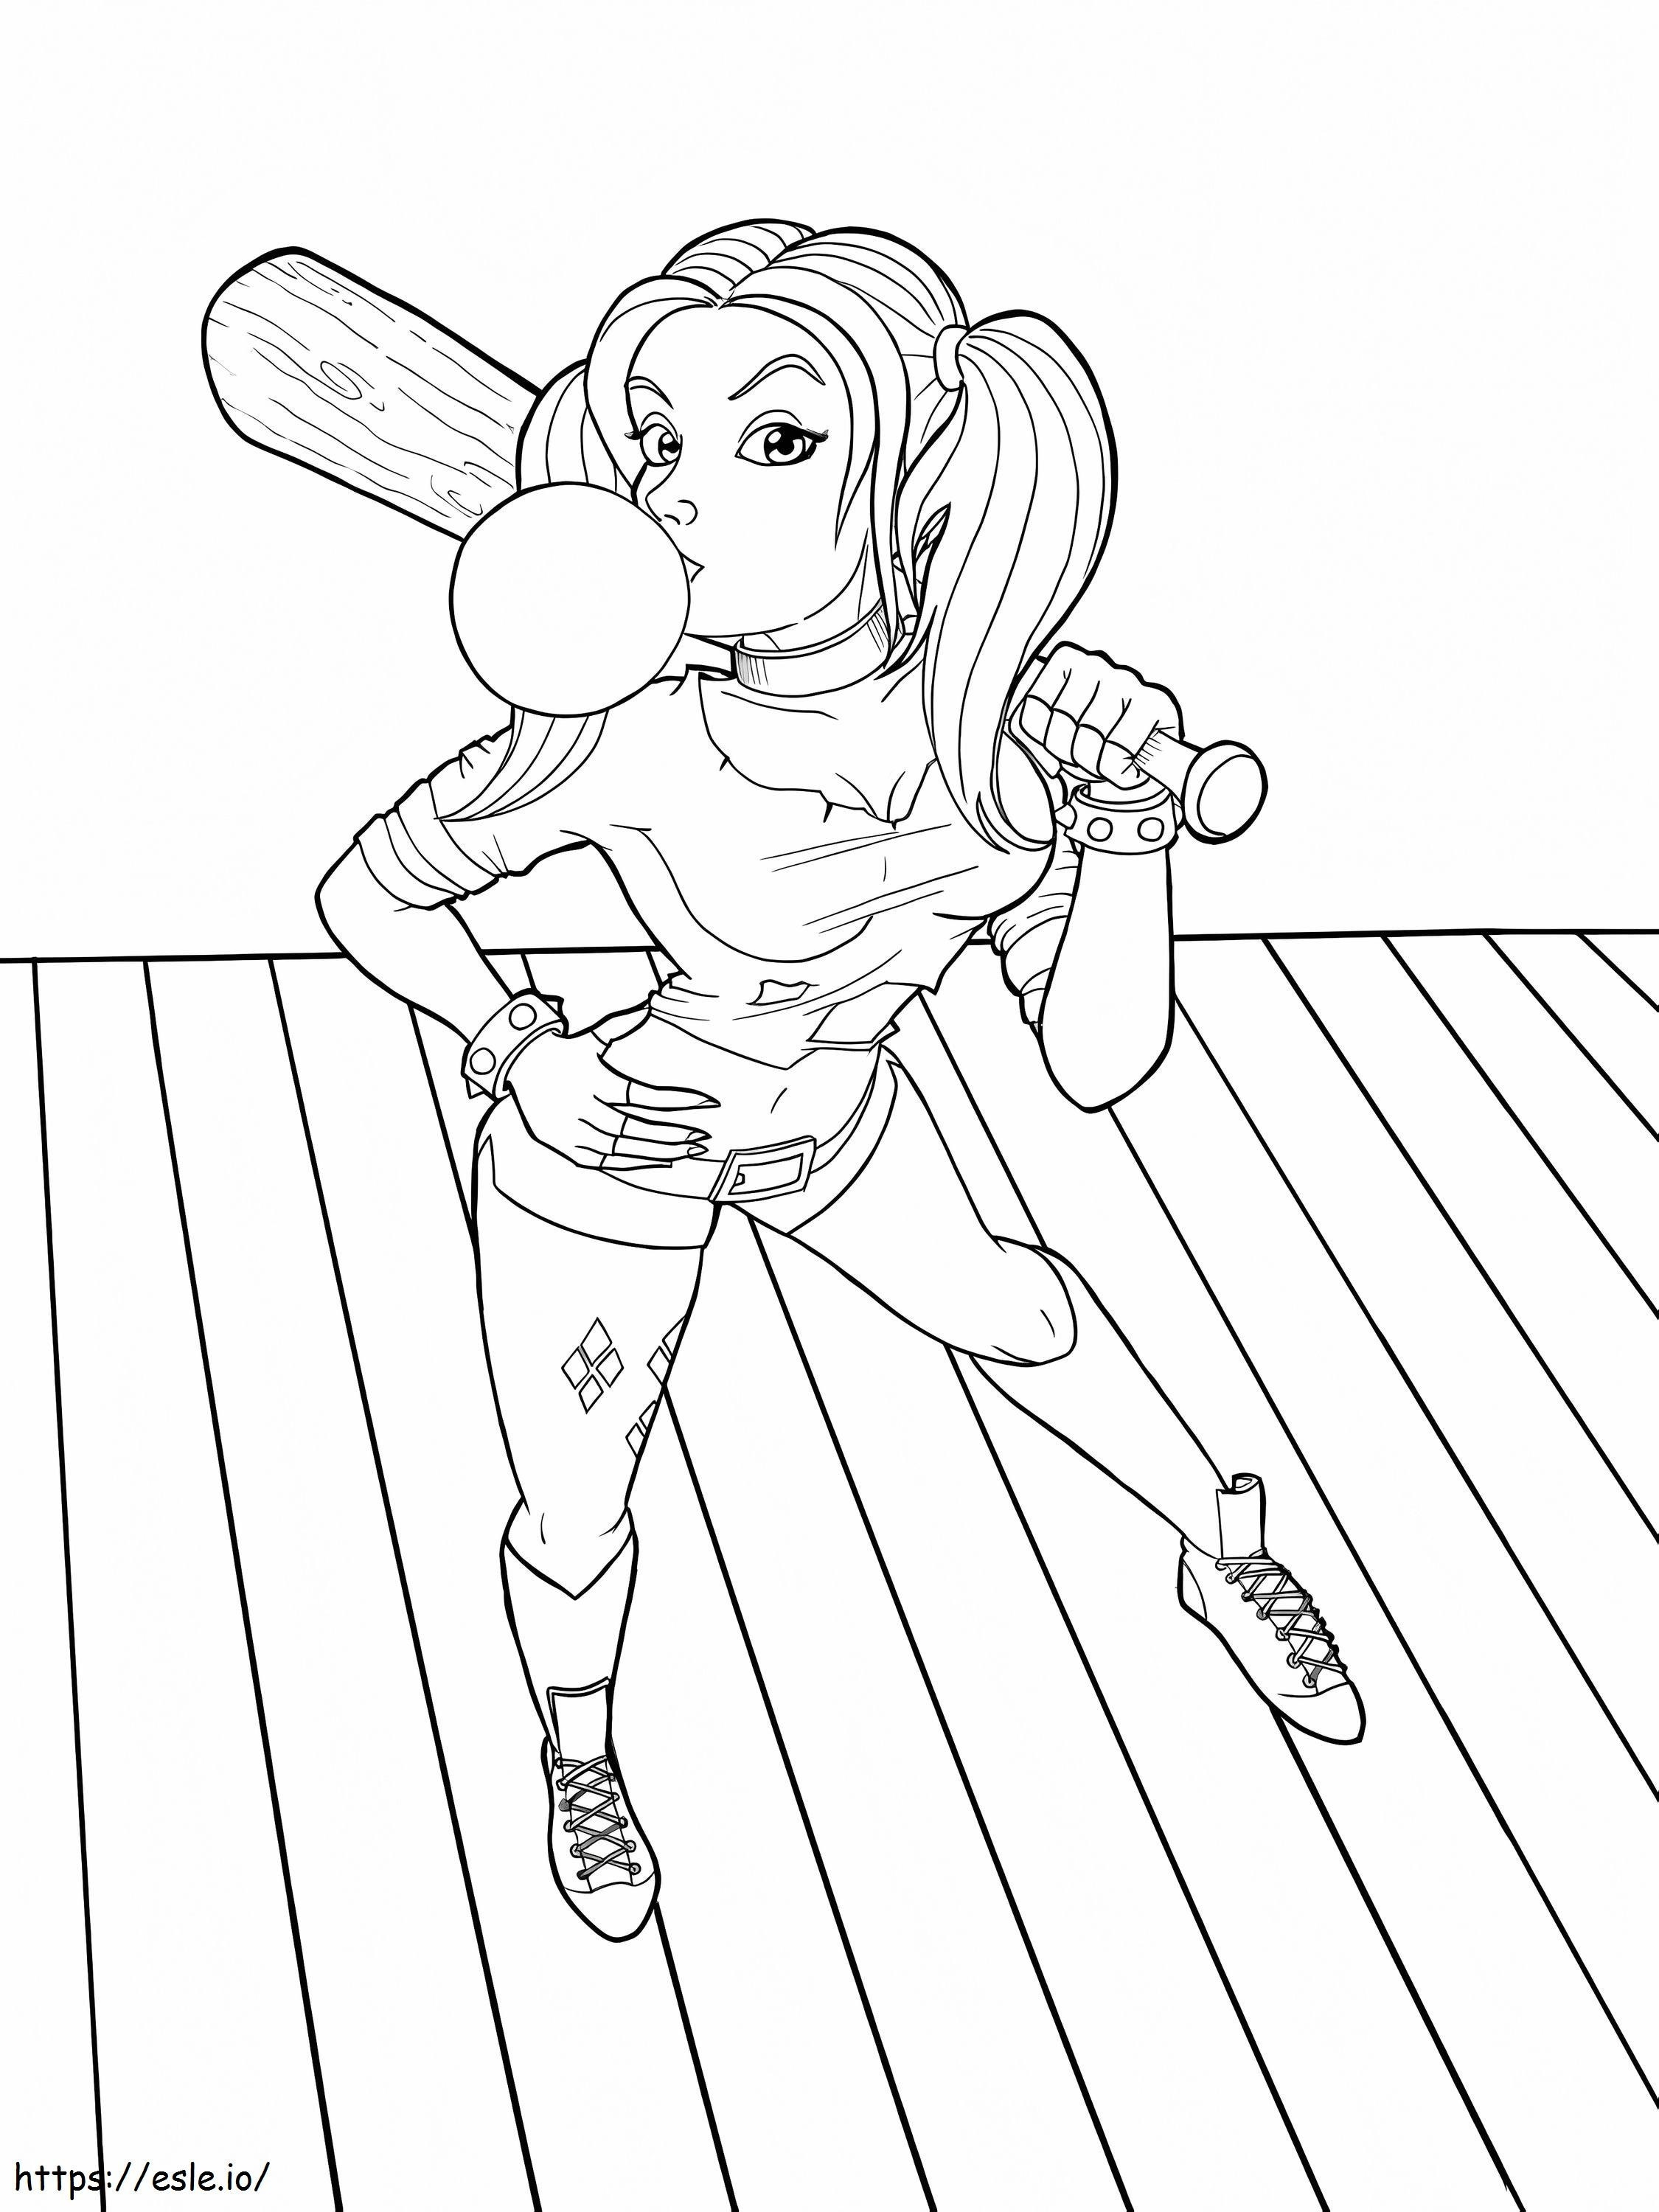 Coloriage La mignonne Harley Quinn tenant une batte de baseball à imprimer dessin